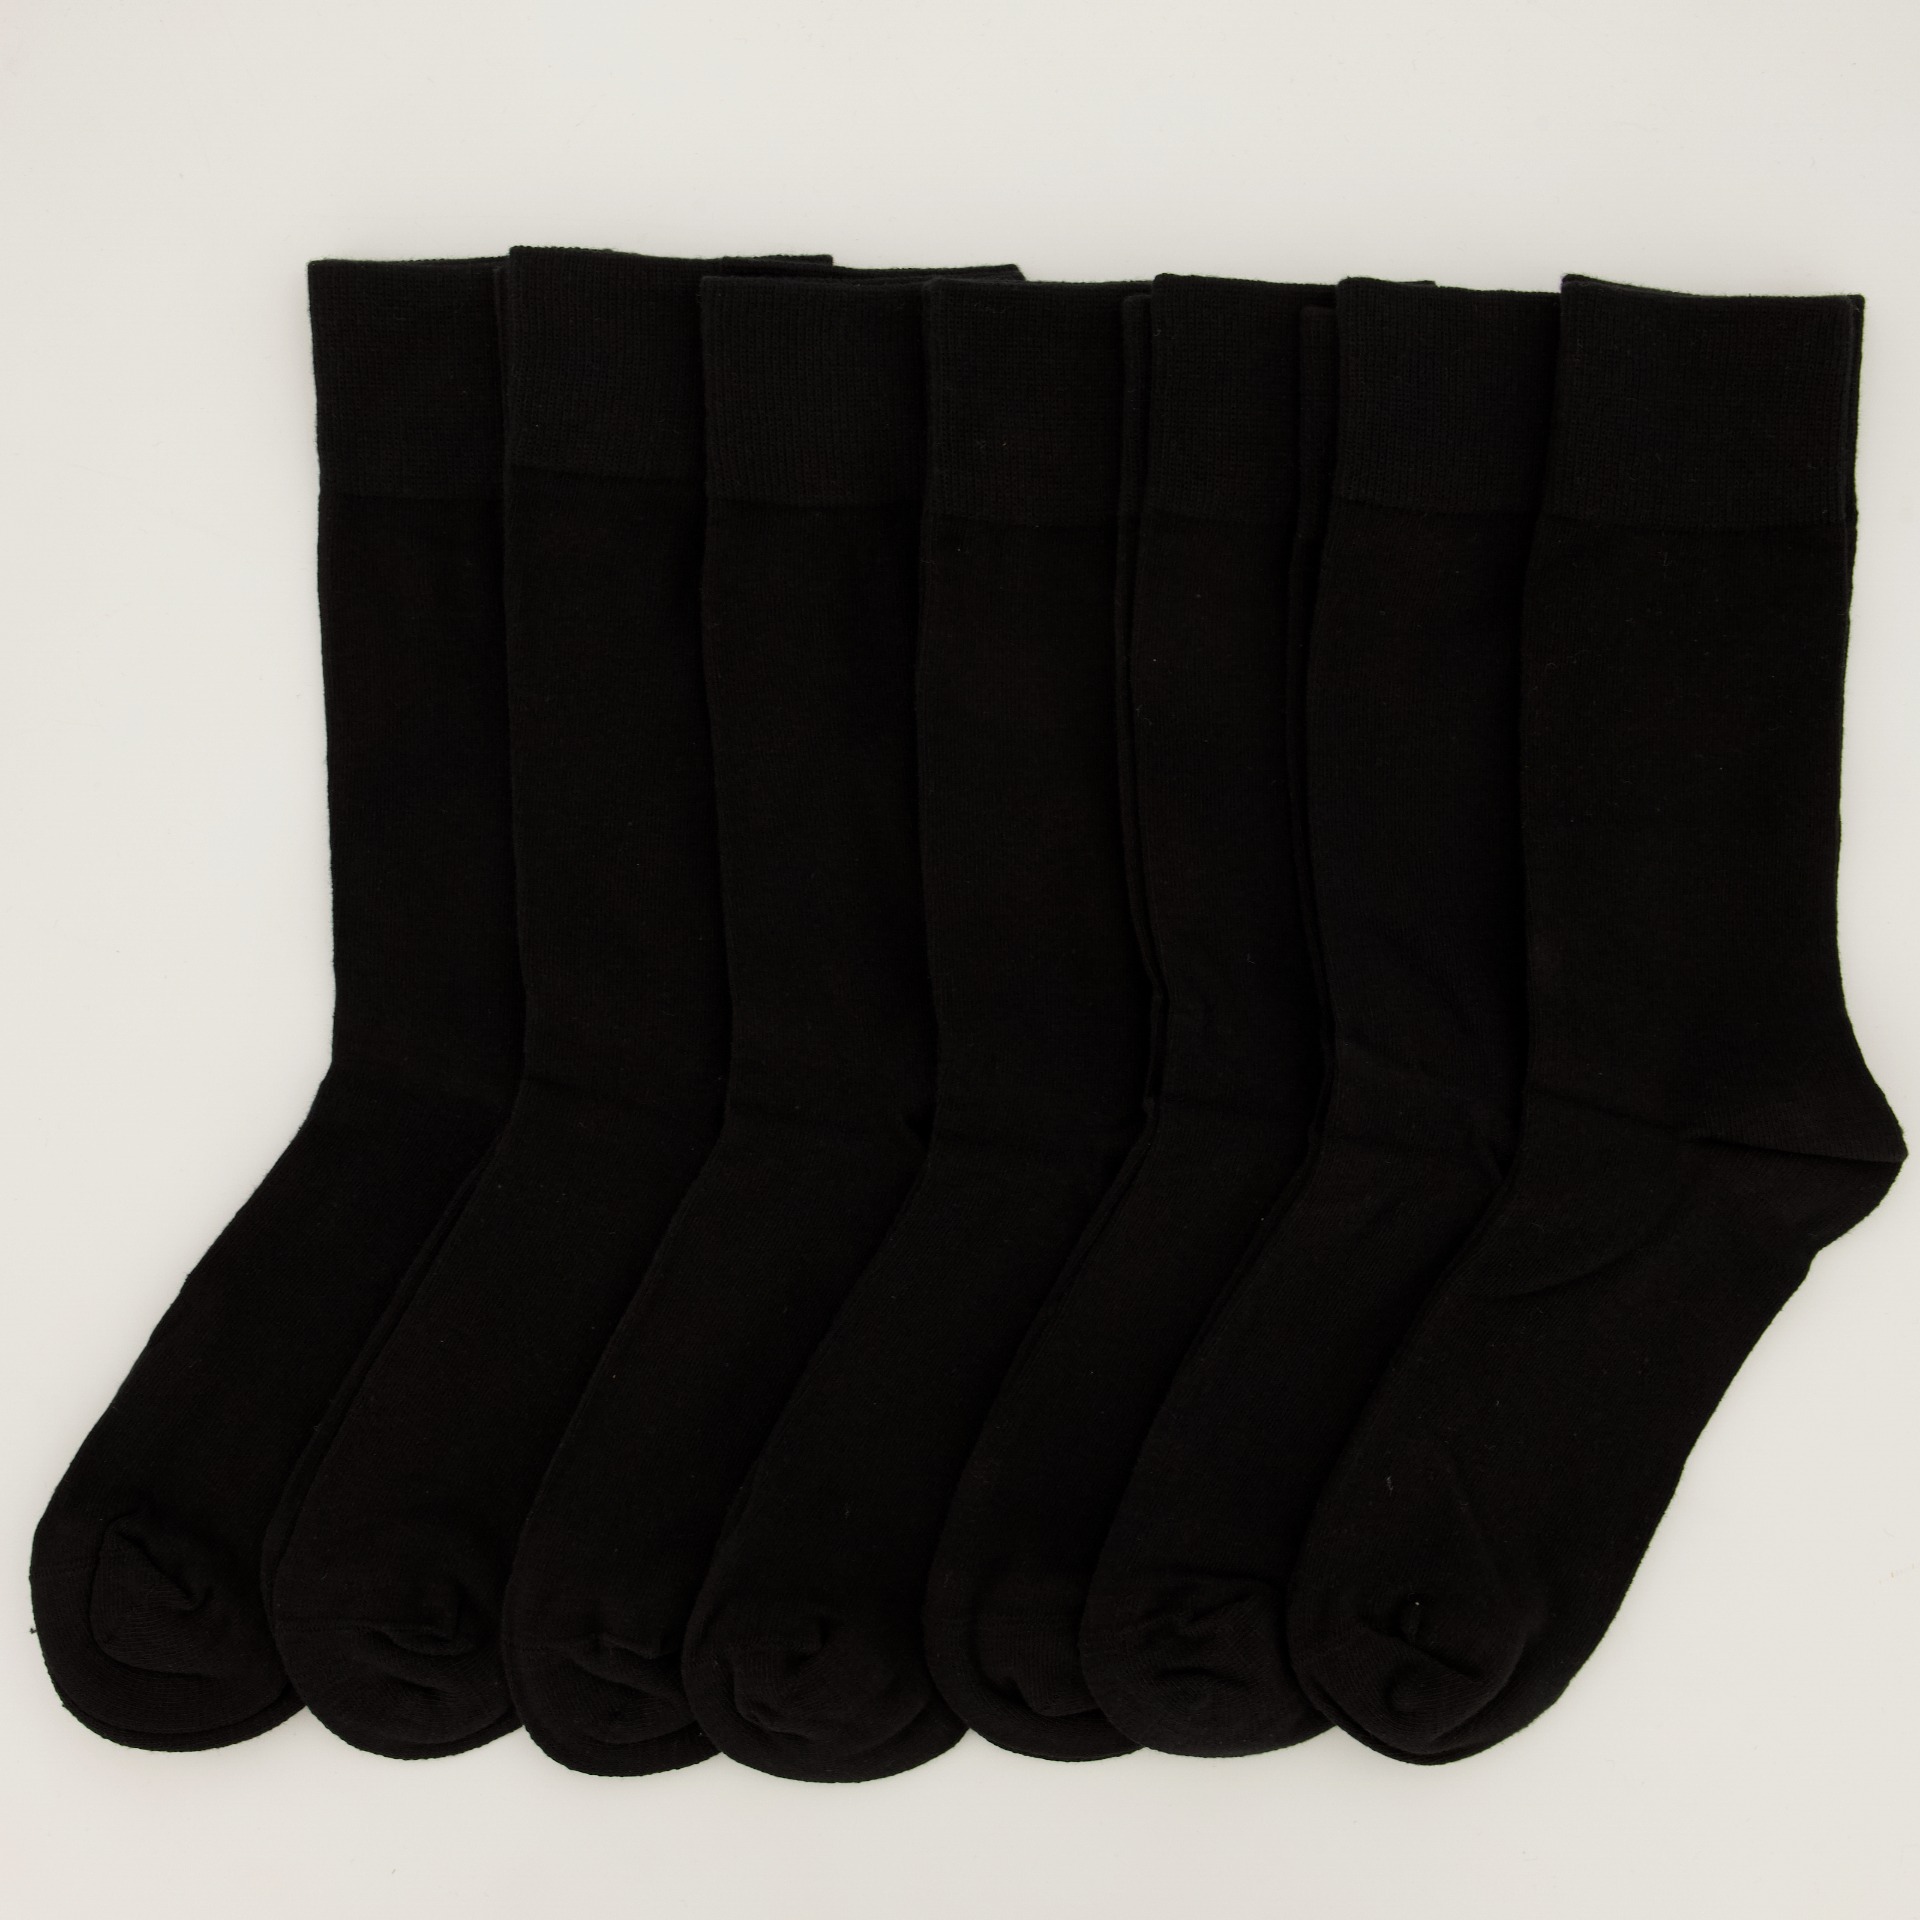 Mens - 7 Pack Plain Anklet Socks - Black